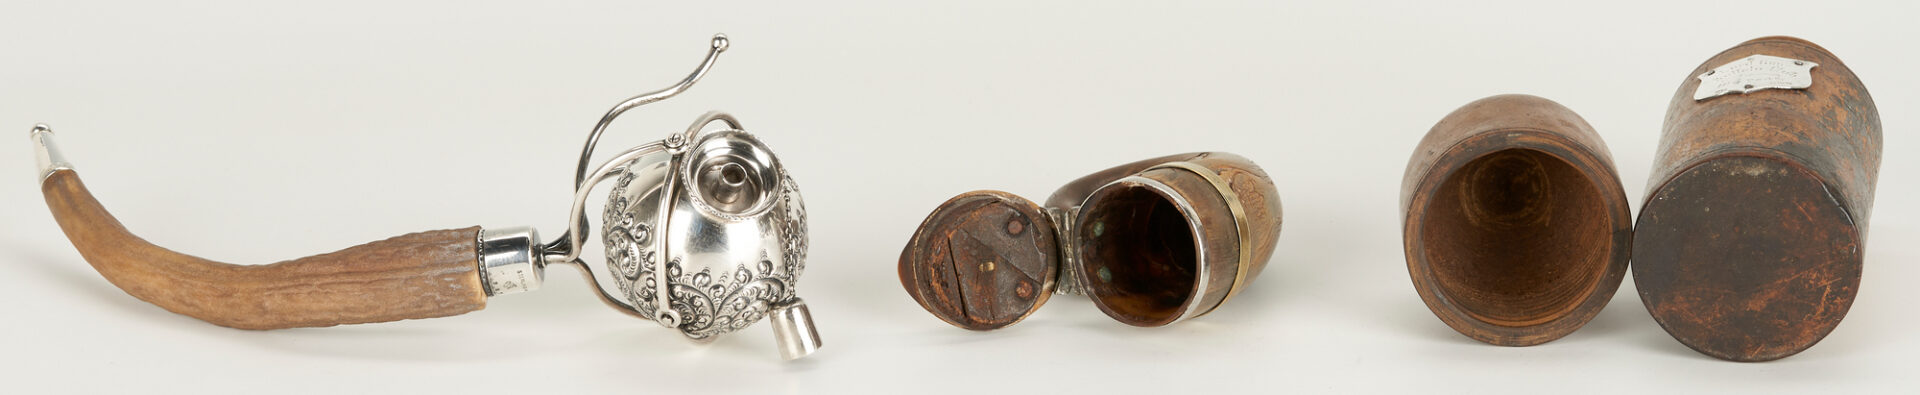 Lot 803: Sterling Silver Teapot, Cigar Lighter, Cigar Holder, Snuff Mull, 4 items total